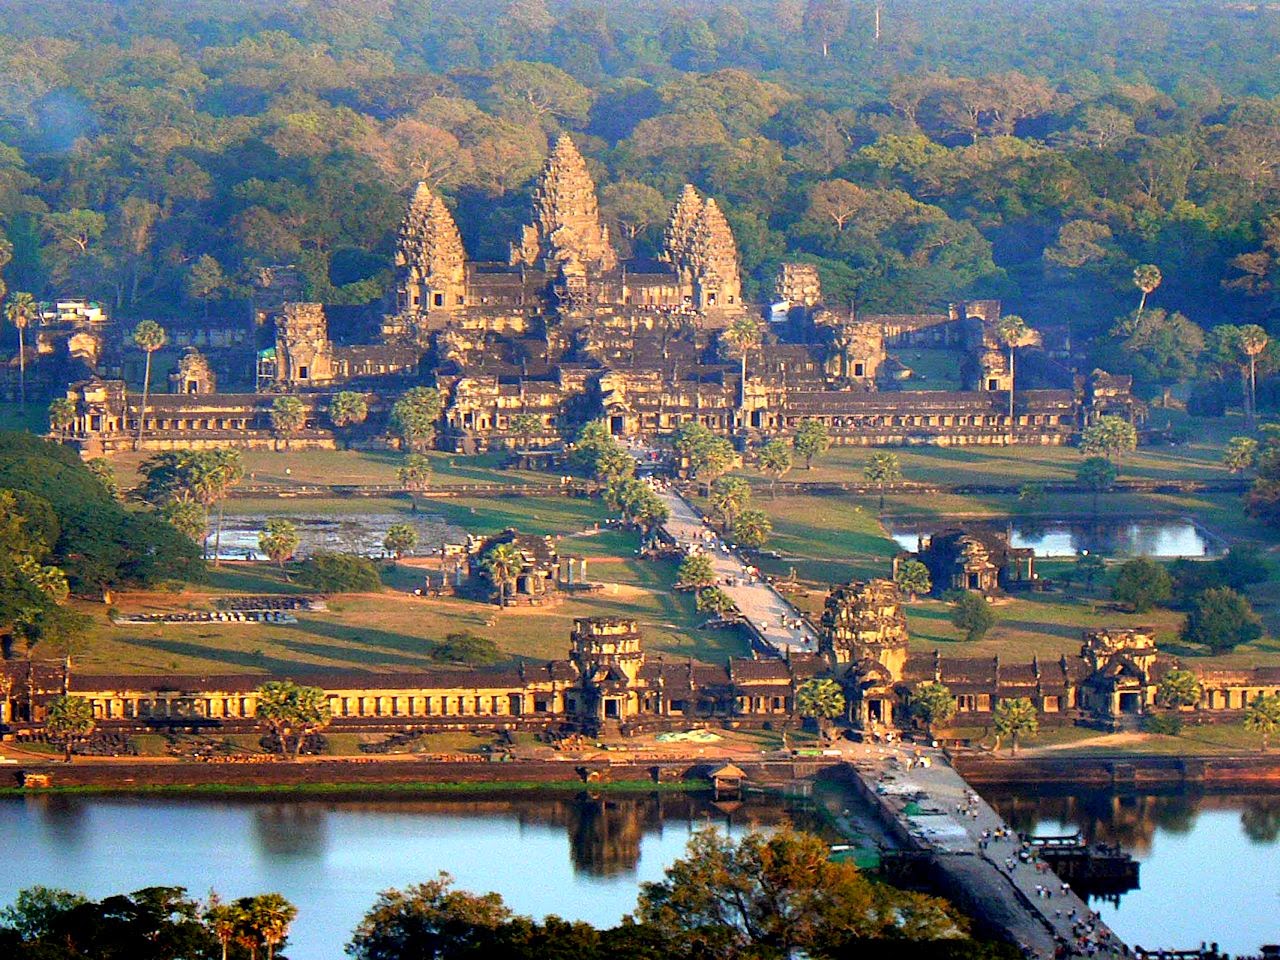 Templo central de Angkor Wat. O que fez os habitantes abandonarem intacta uma cidade opulenta?